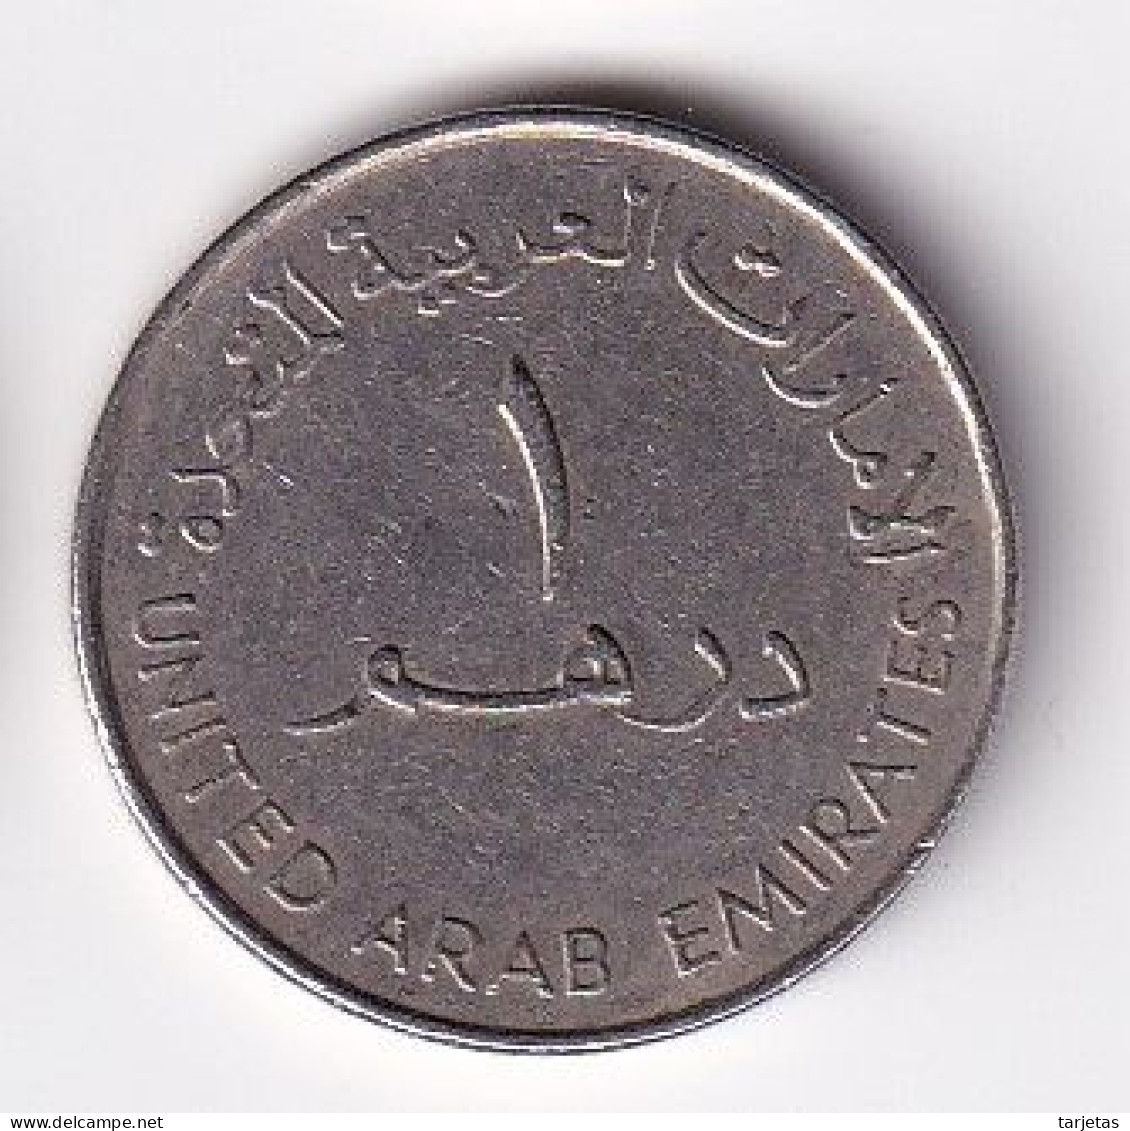 MONEDA DE EMIRATOS ARABES DE 1 DIRHAM DEL AÑO 1998 - 35 ANIV. BANK OF DUBAI (COIN) - Verenigde Arabische Emiraten